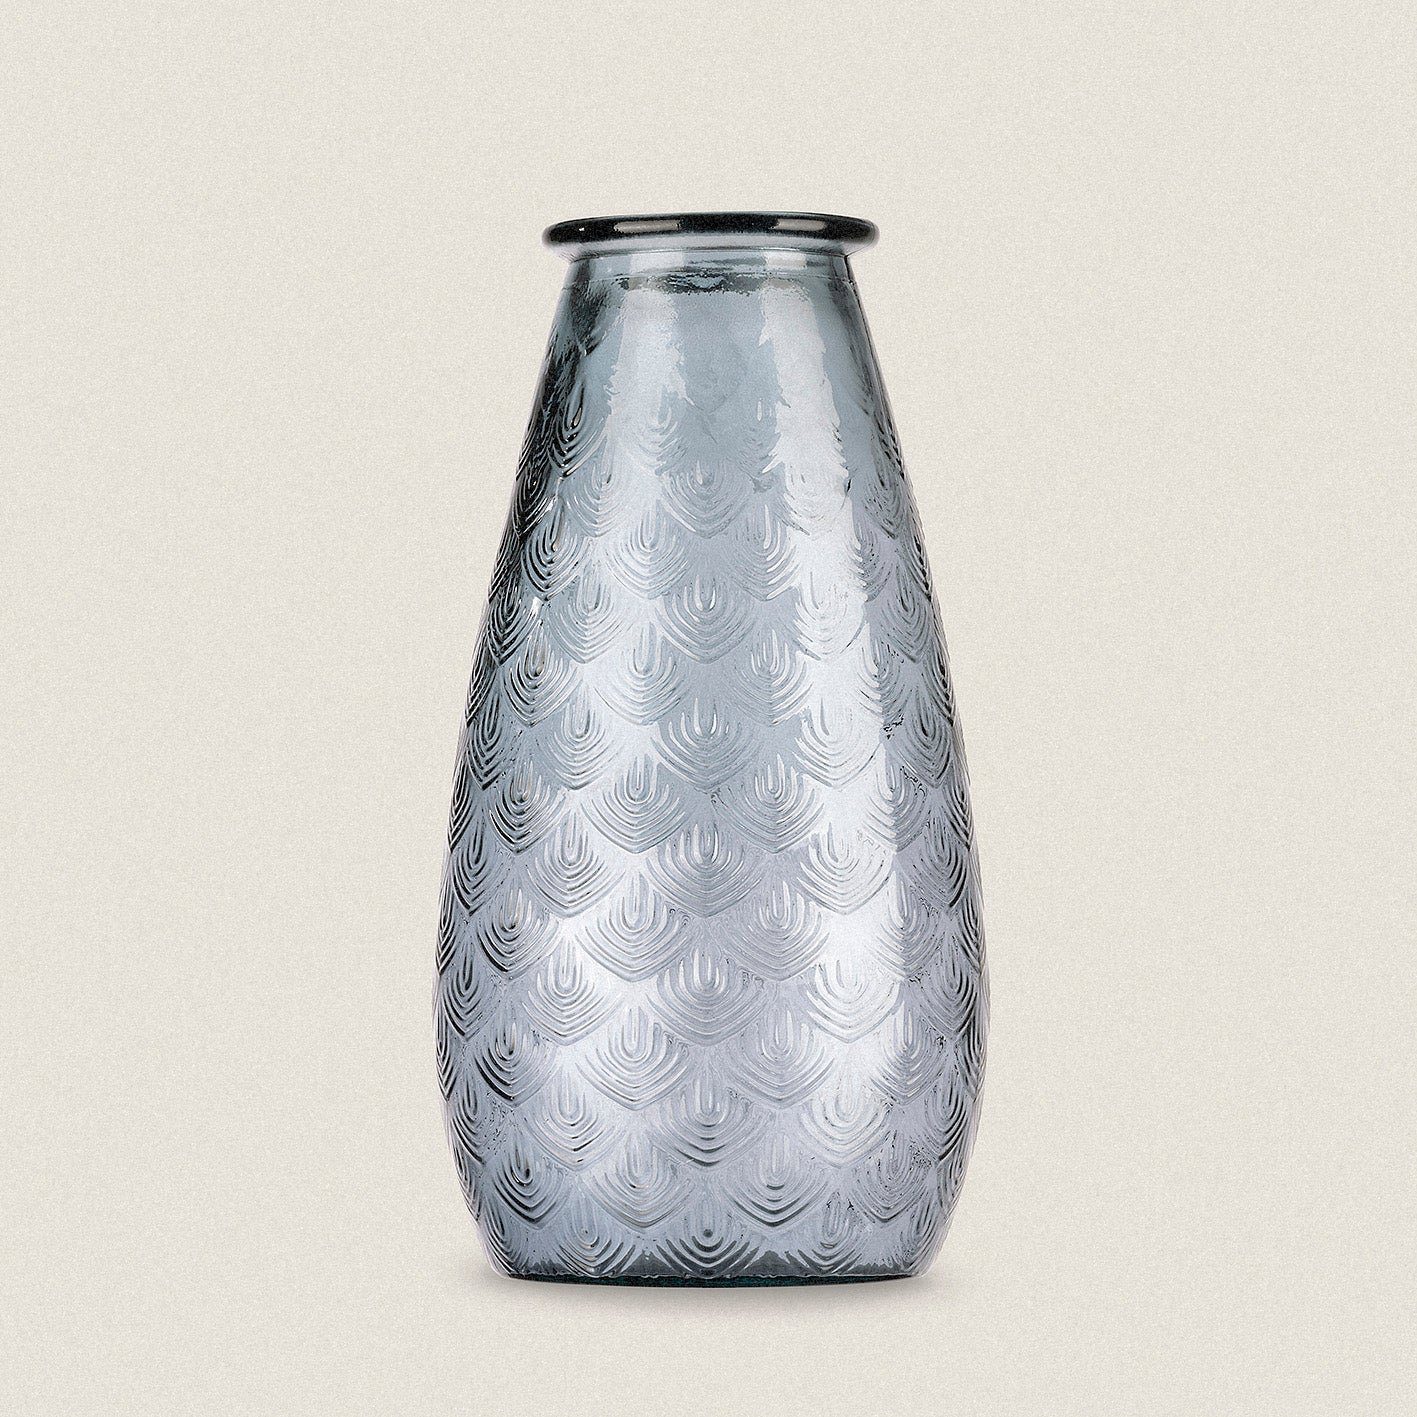 100 Altglas, % Tischvase "Isabella", up way the Vase blau